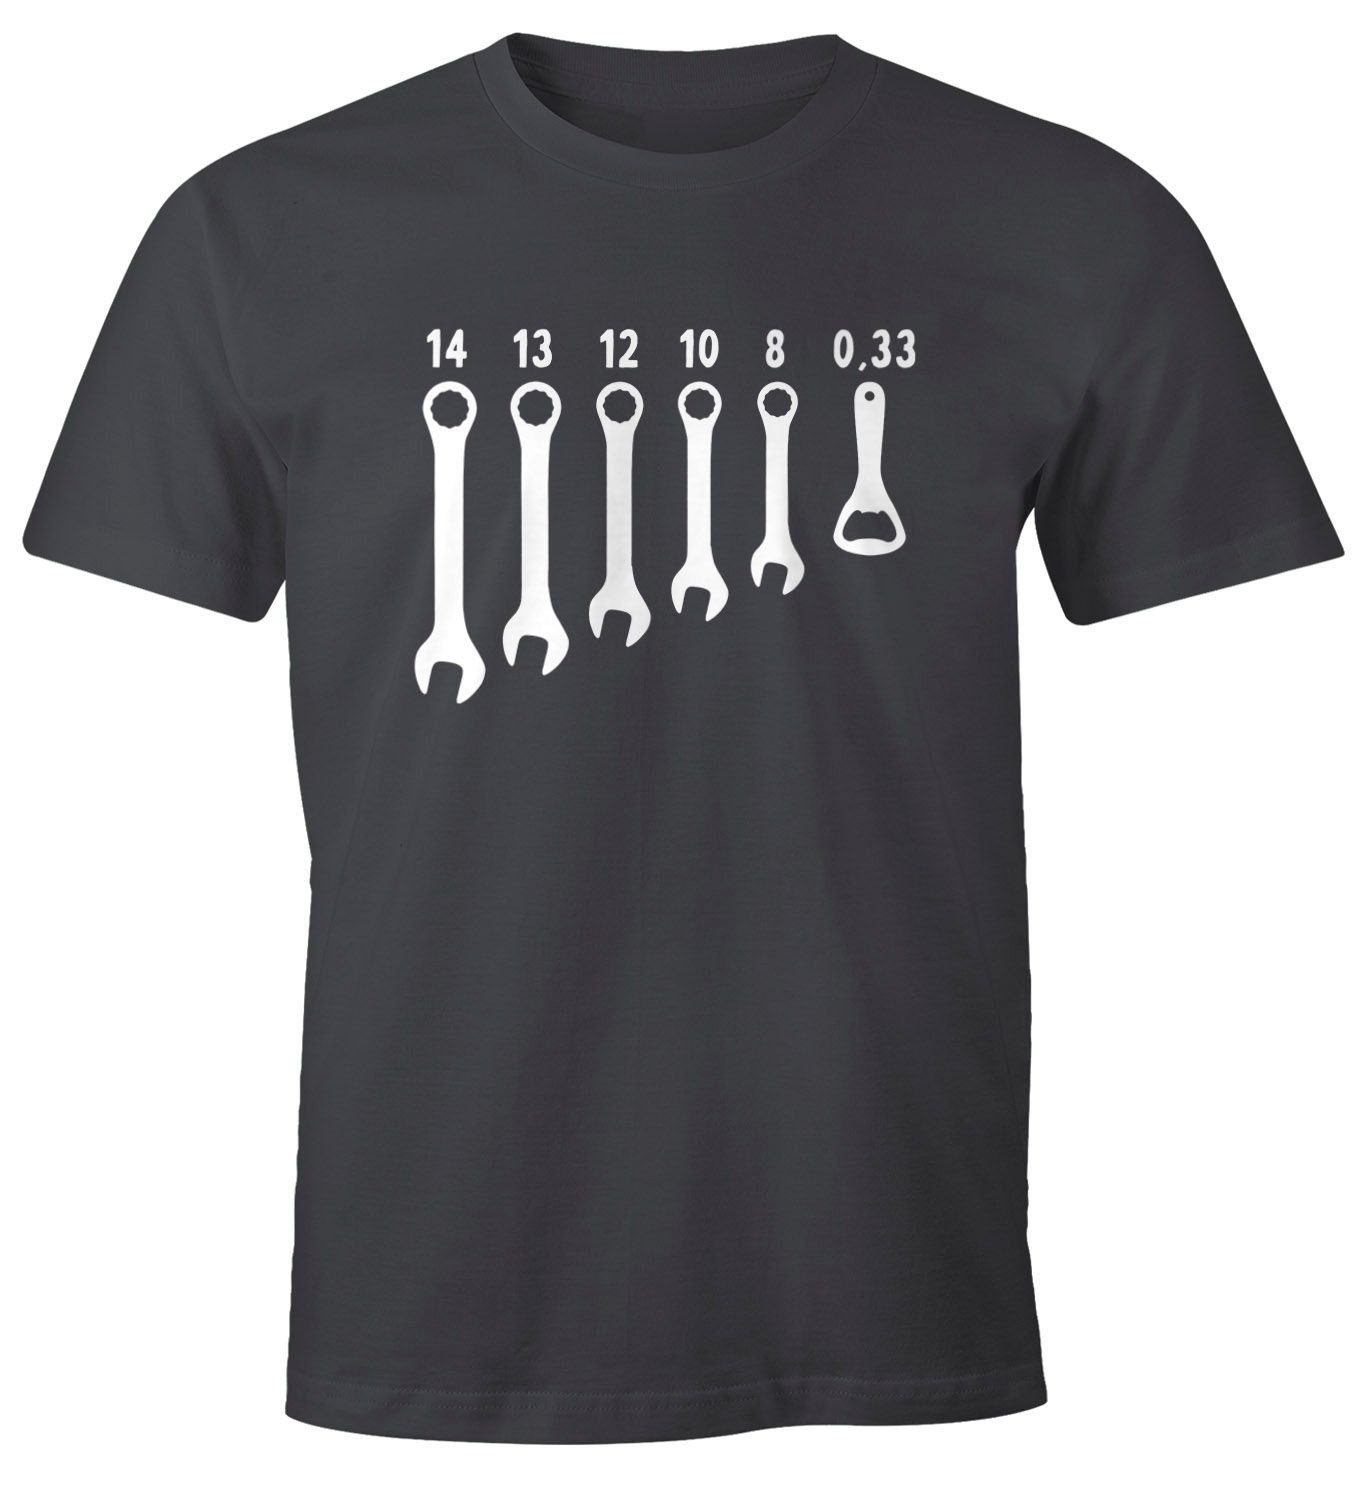 grau Flaschenöffner Herren Bieröffner mit Fun-Shirt Print-Shirt MoonWorks Moonworks® T-Shirt Fun-Shirt Schraubenschlüssel Herren Print